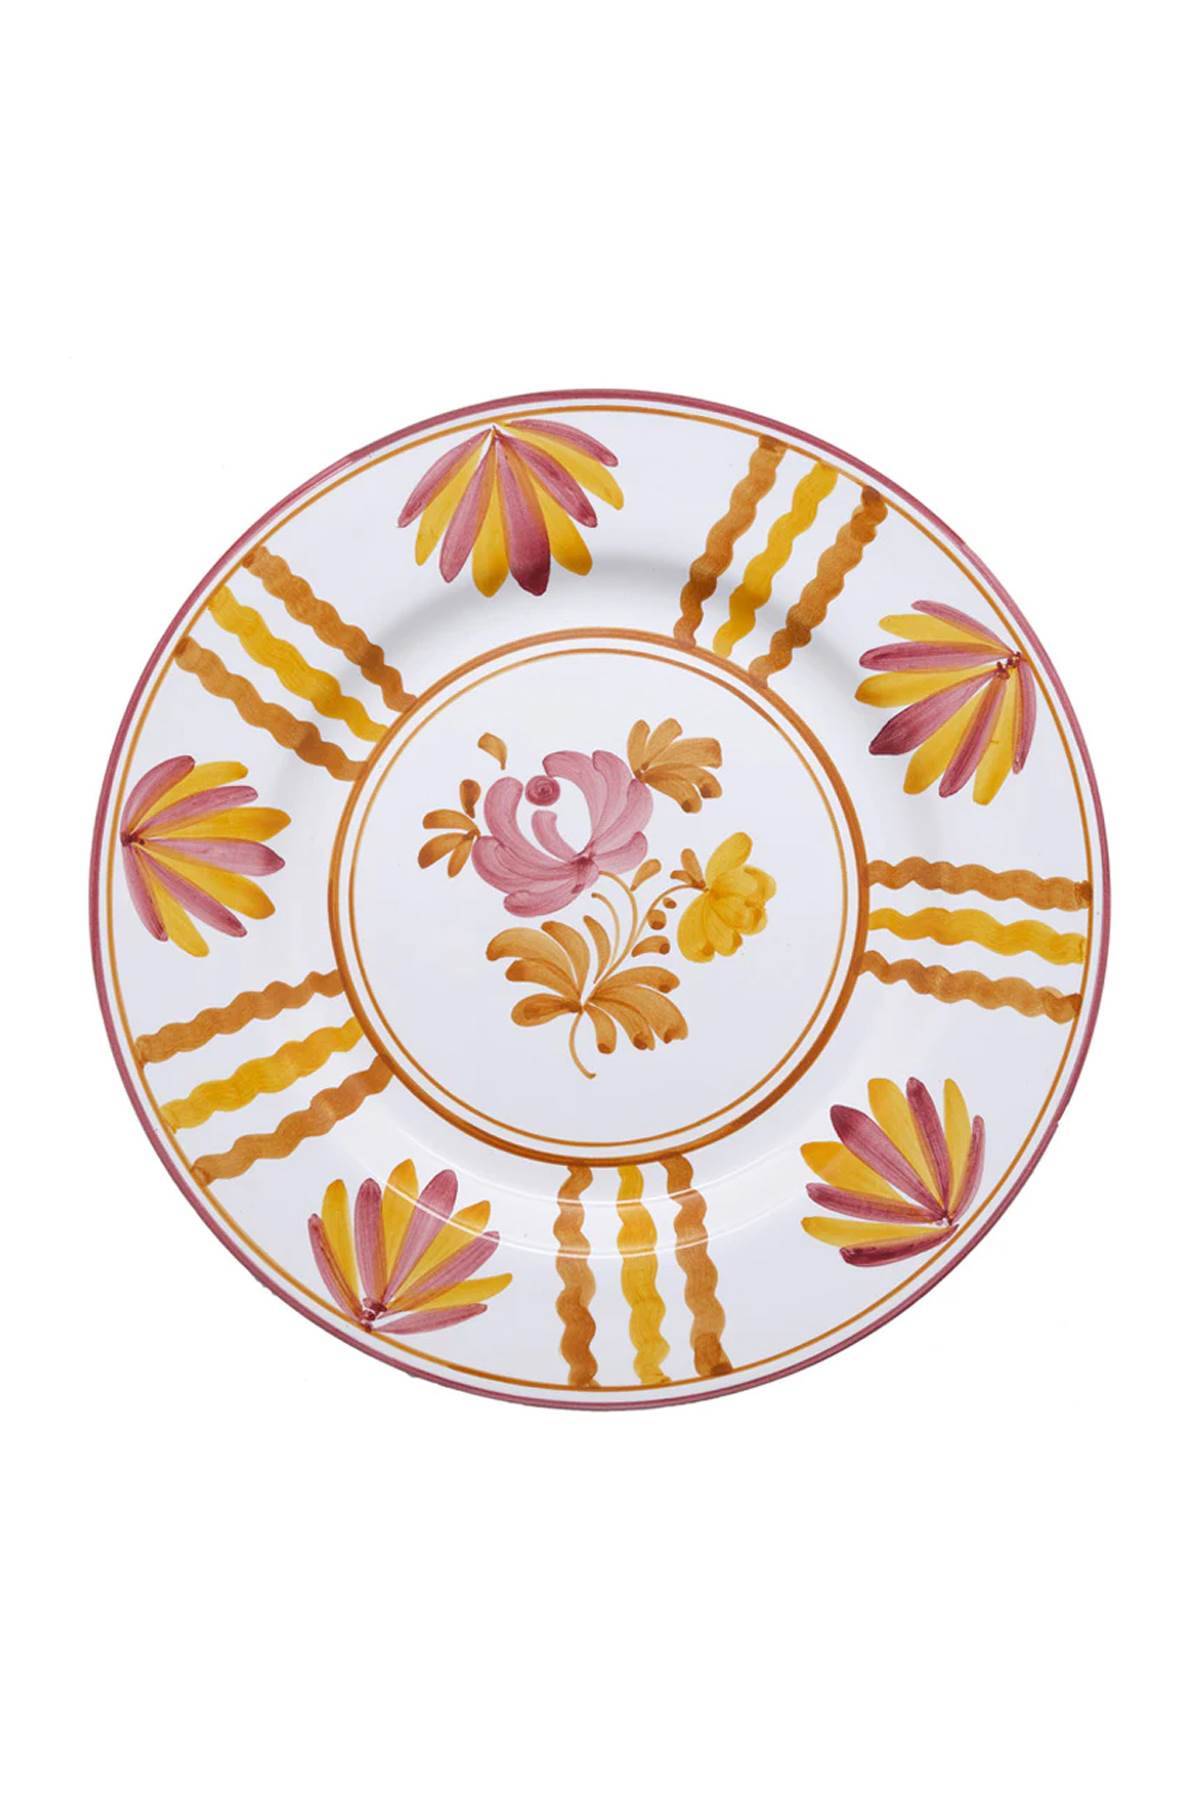 CABANA CABANA blossom dinner plate